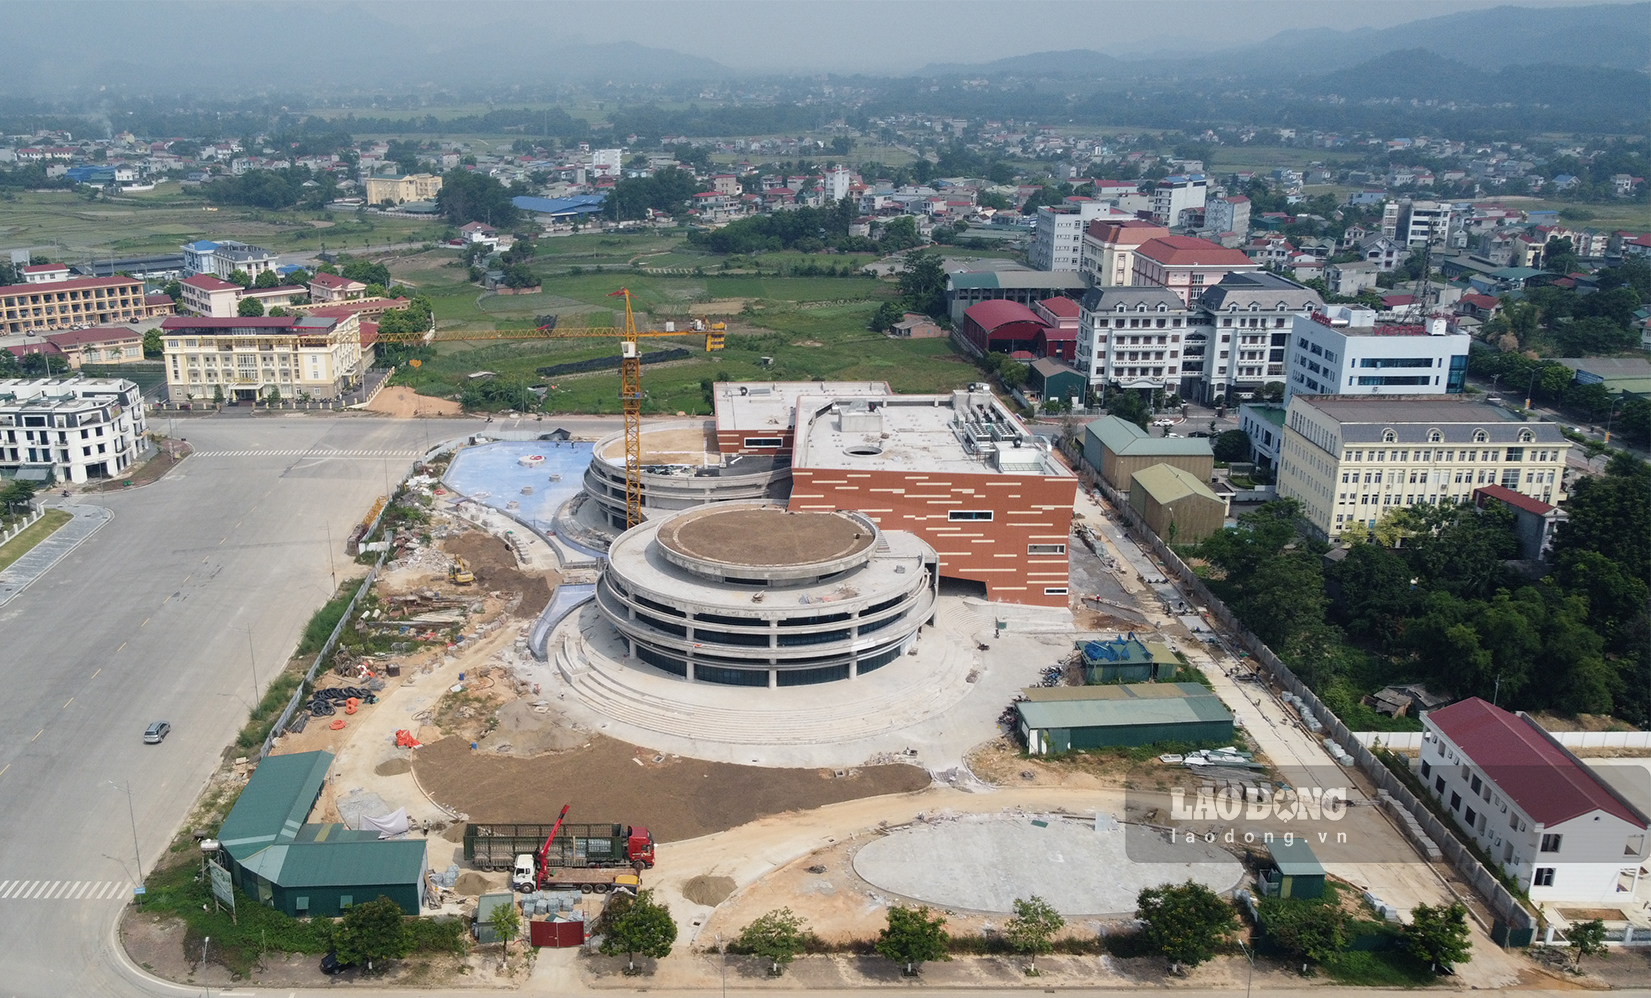 Dự án Bảo tàng tỉnh Cao Bằng có tổng diện tích sử dụng 2,2 ha, với kinh phí đầu tư 376 tỉ đồng. Công trình được khởi công xây dựng từ tháng 10.2021 do Ban Quản lý dự án đầu tư và xây dựng tỉnh Cao Bằng làm chủ đầu tư.